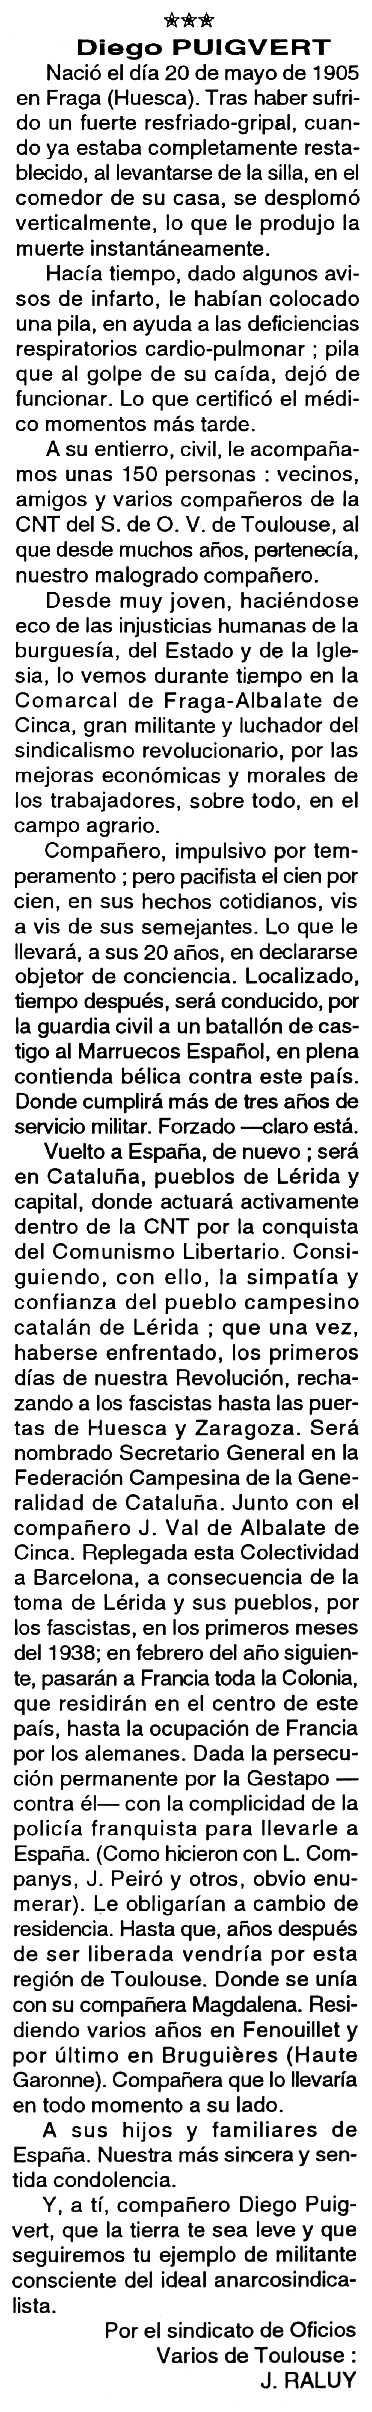 Necrològica de Diego Puigvert Areste apareguda en el periòdic tolosà "Cenit" del 19 d'abril de 1994